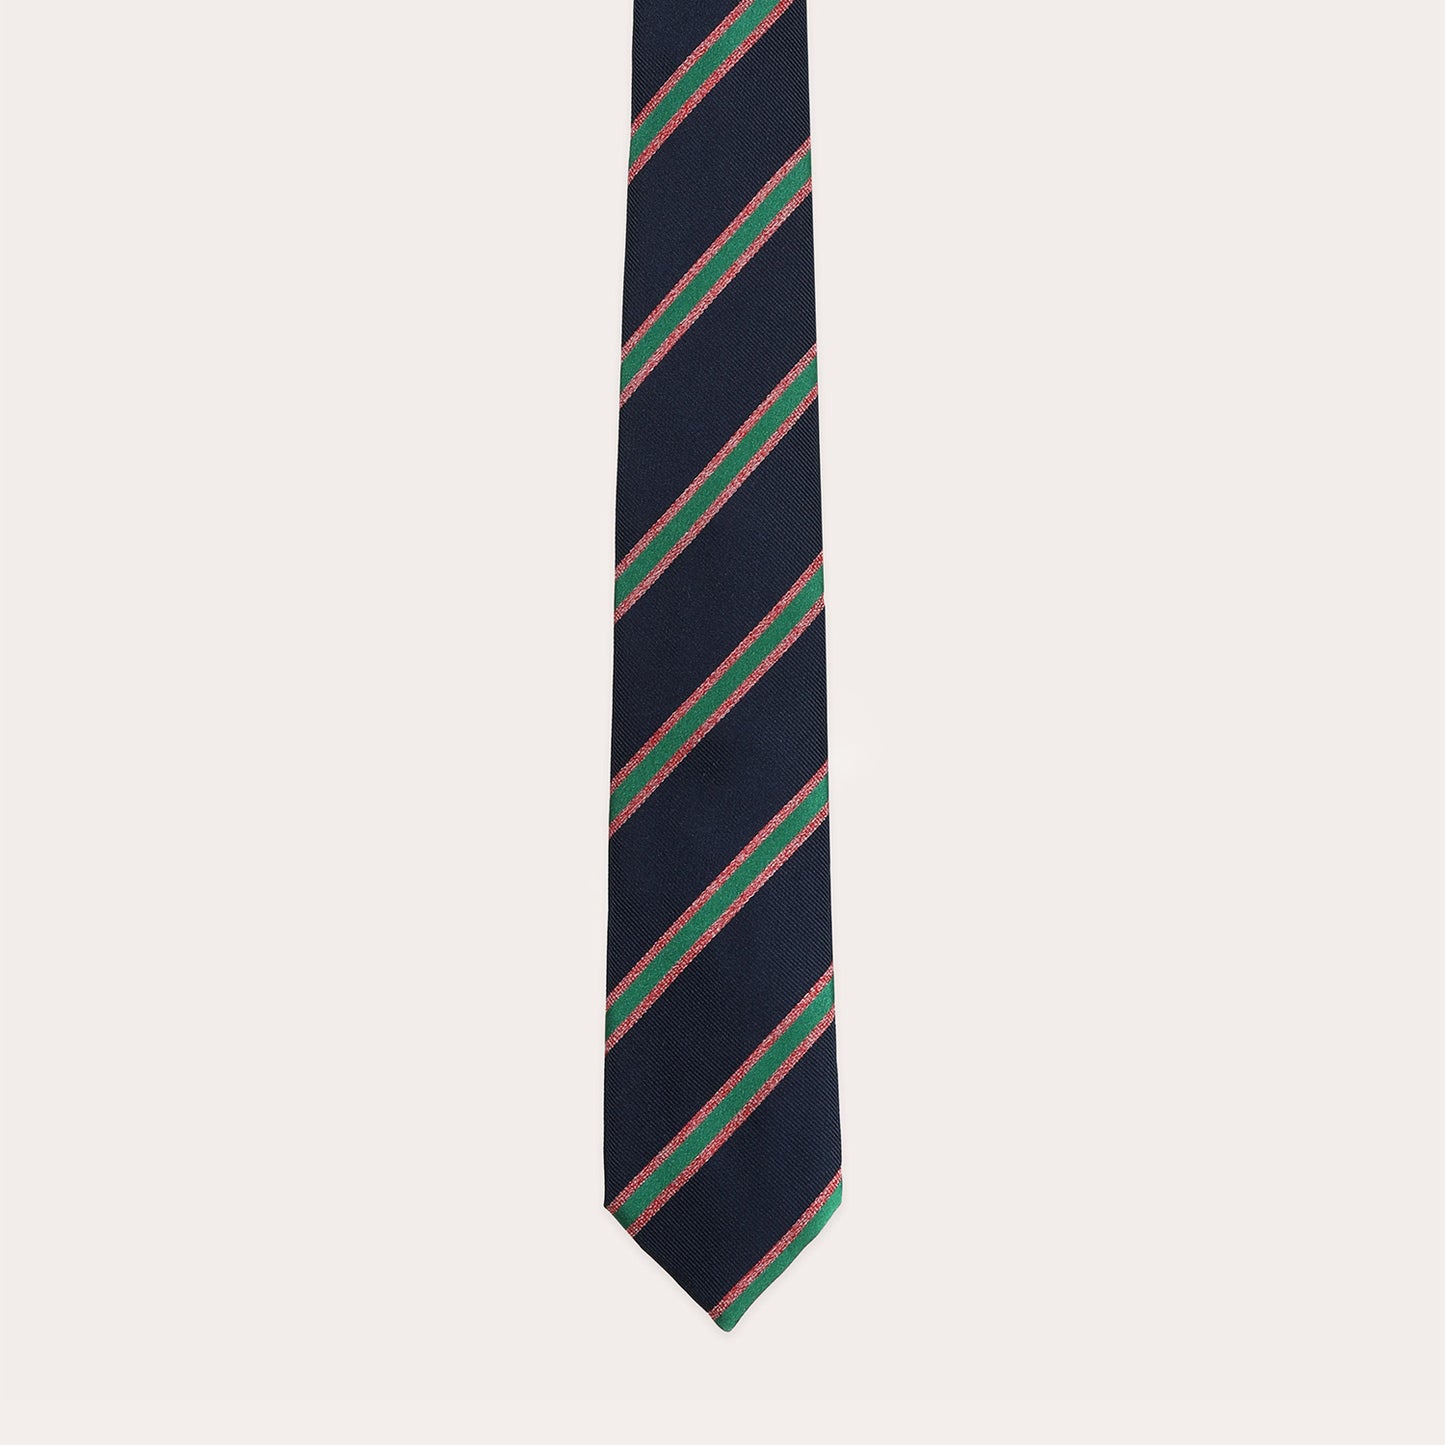 Cravate marine à rayures